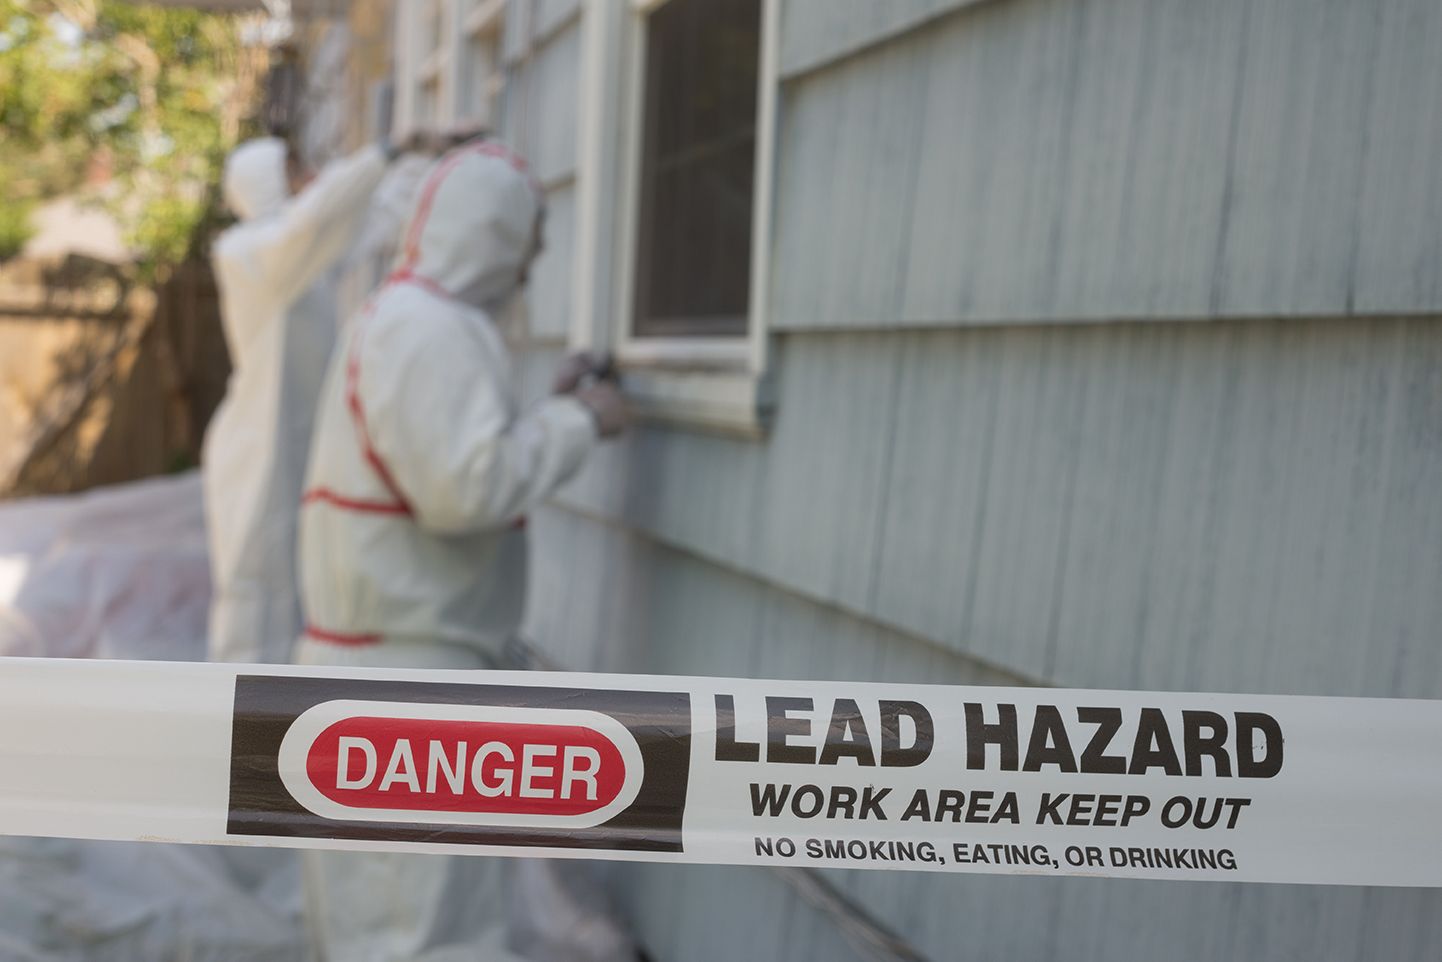 Lead Hazard warning sign